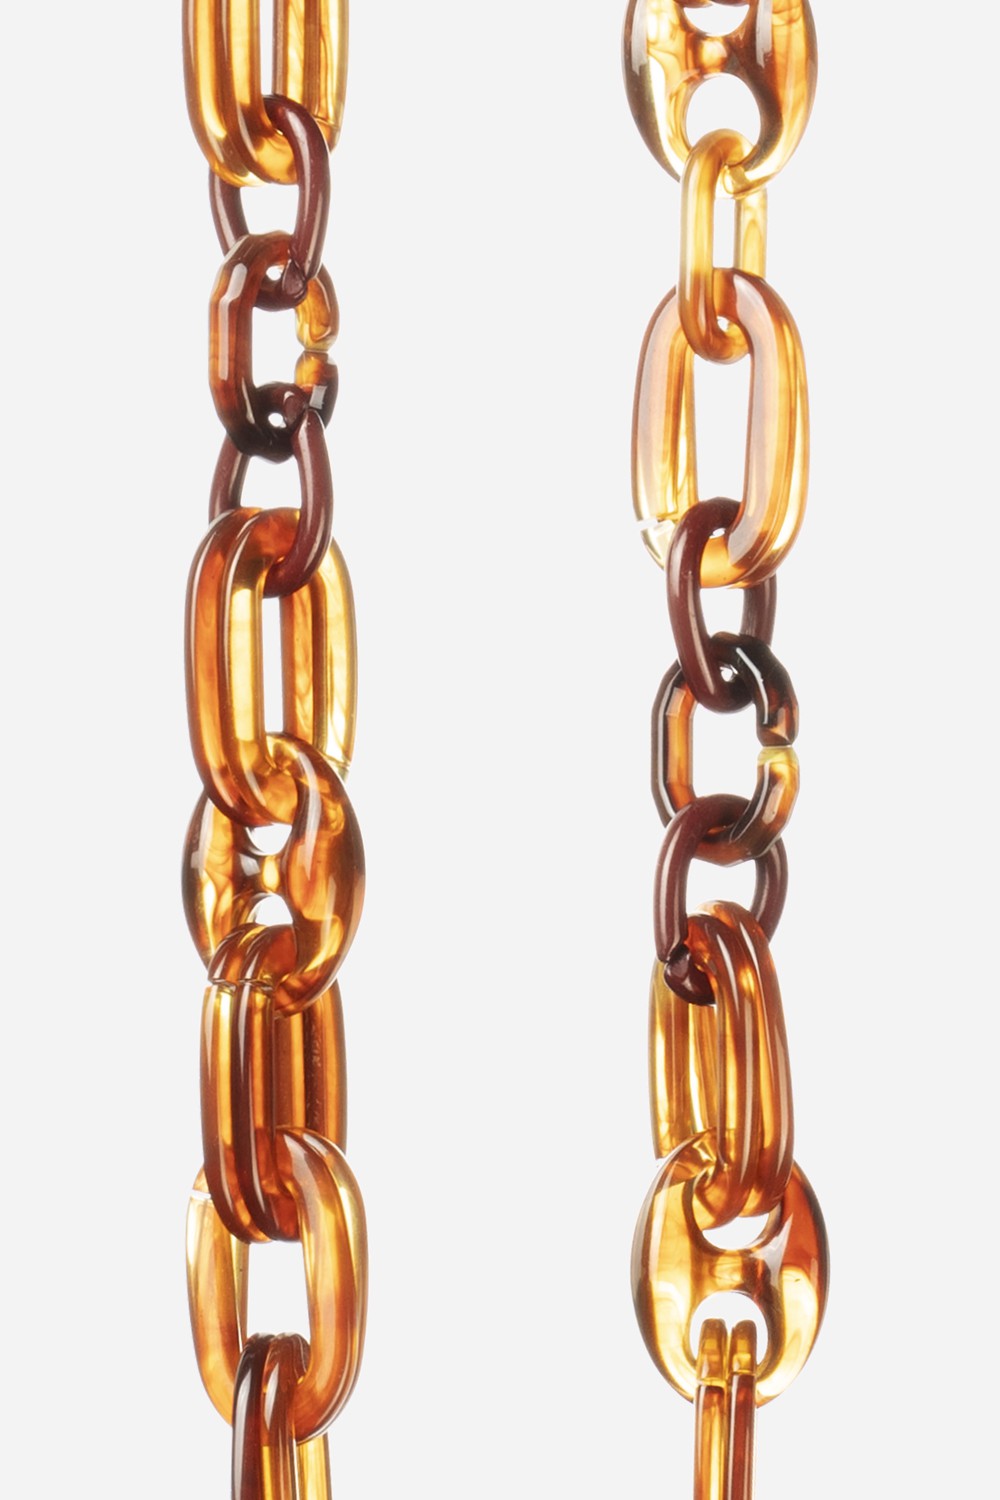 Chaine Longue Ambre Marron 120 cm